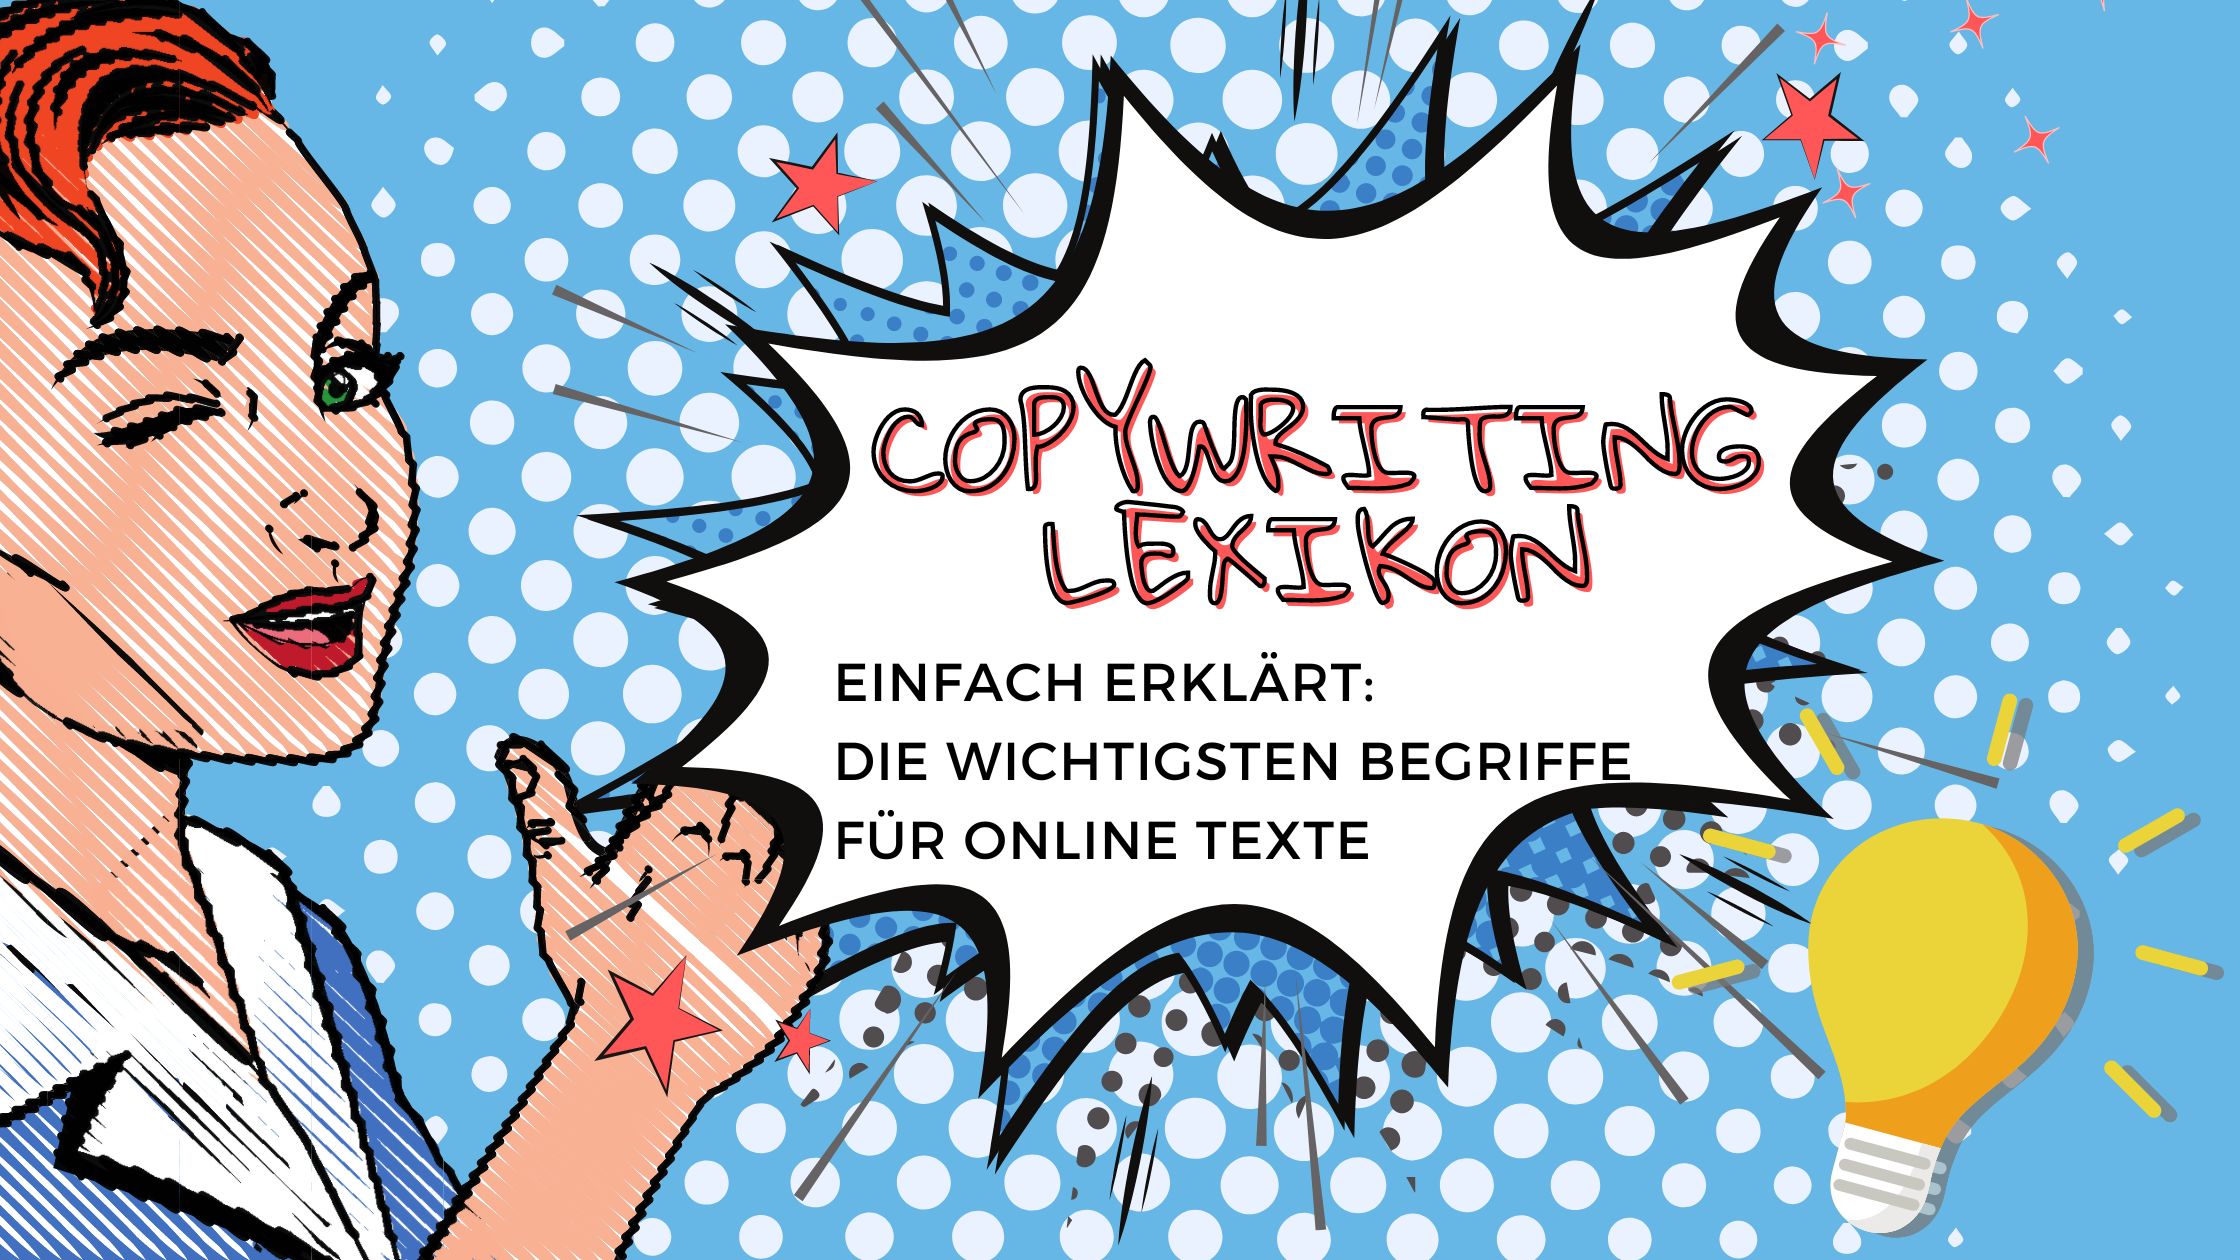 Copywriting Lexikon: Die wichtigsten Begriffe für online Text einfach erklärt.